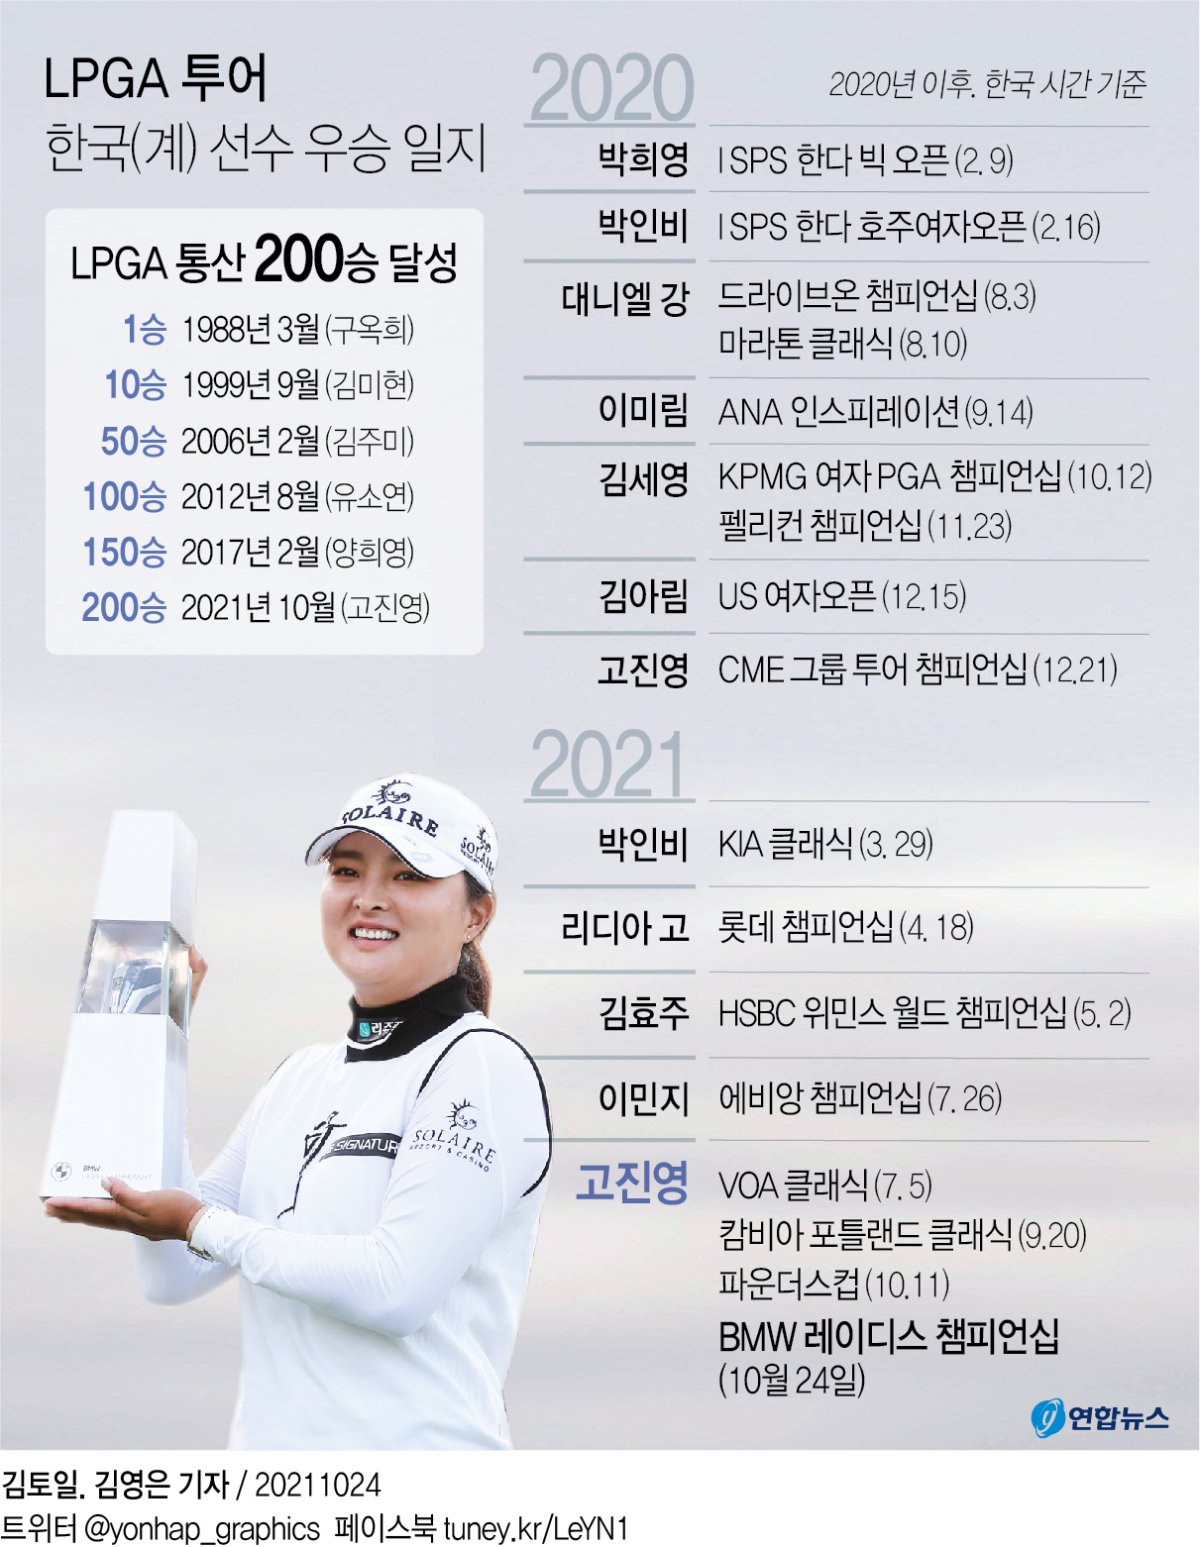 [그래픽] LPGA 투어 한국(계) 선수 우승 일지